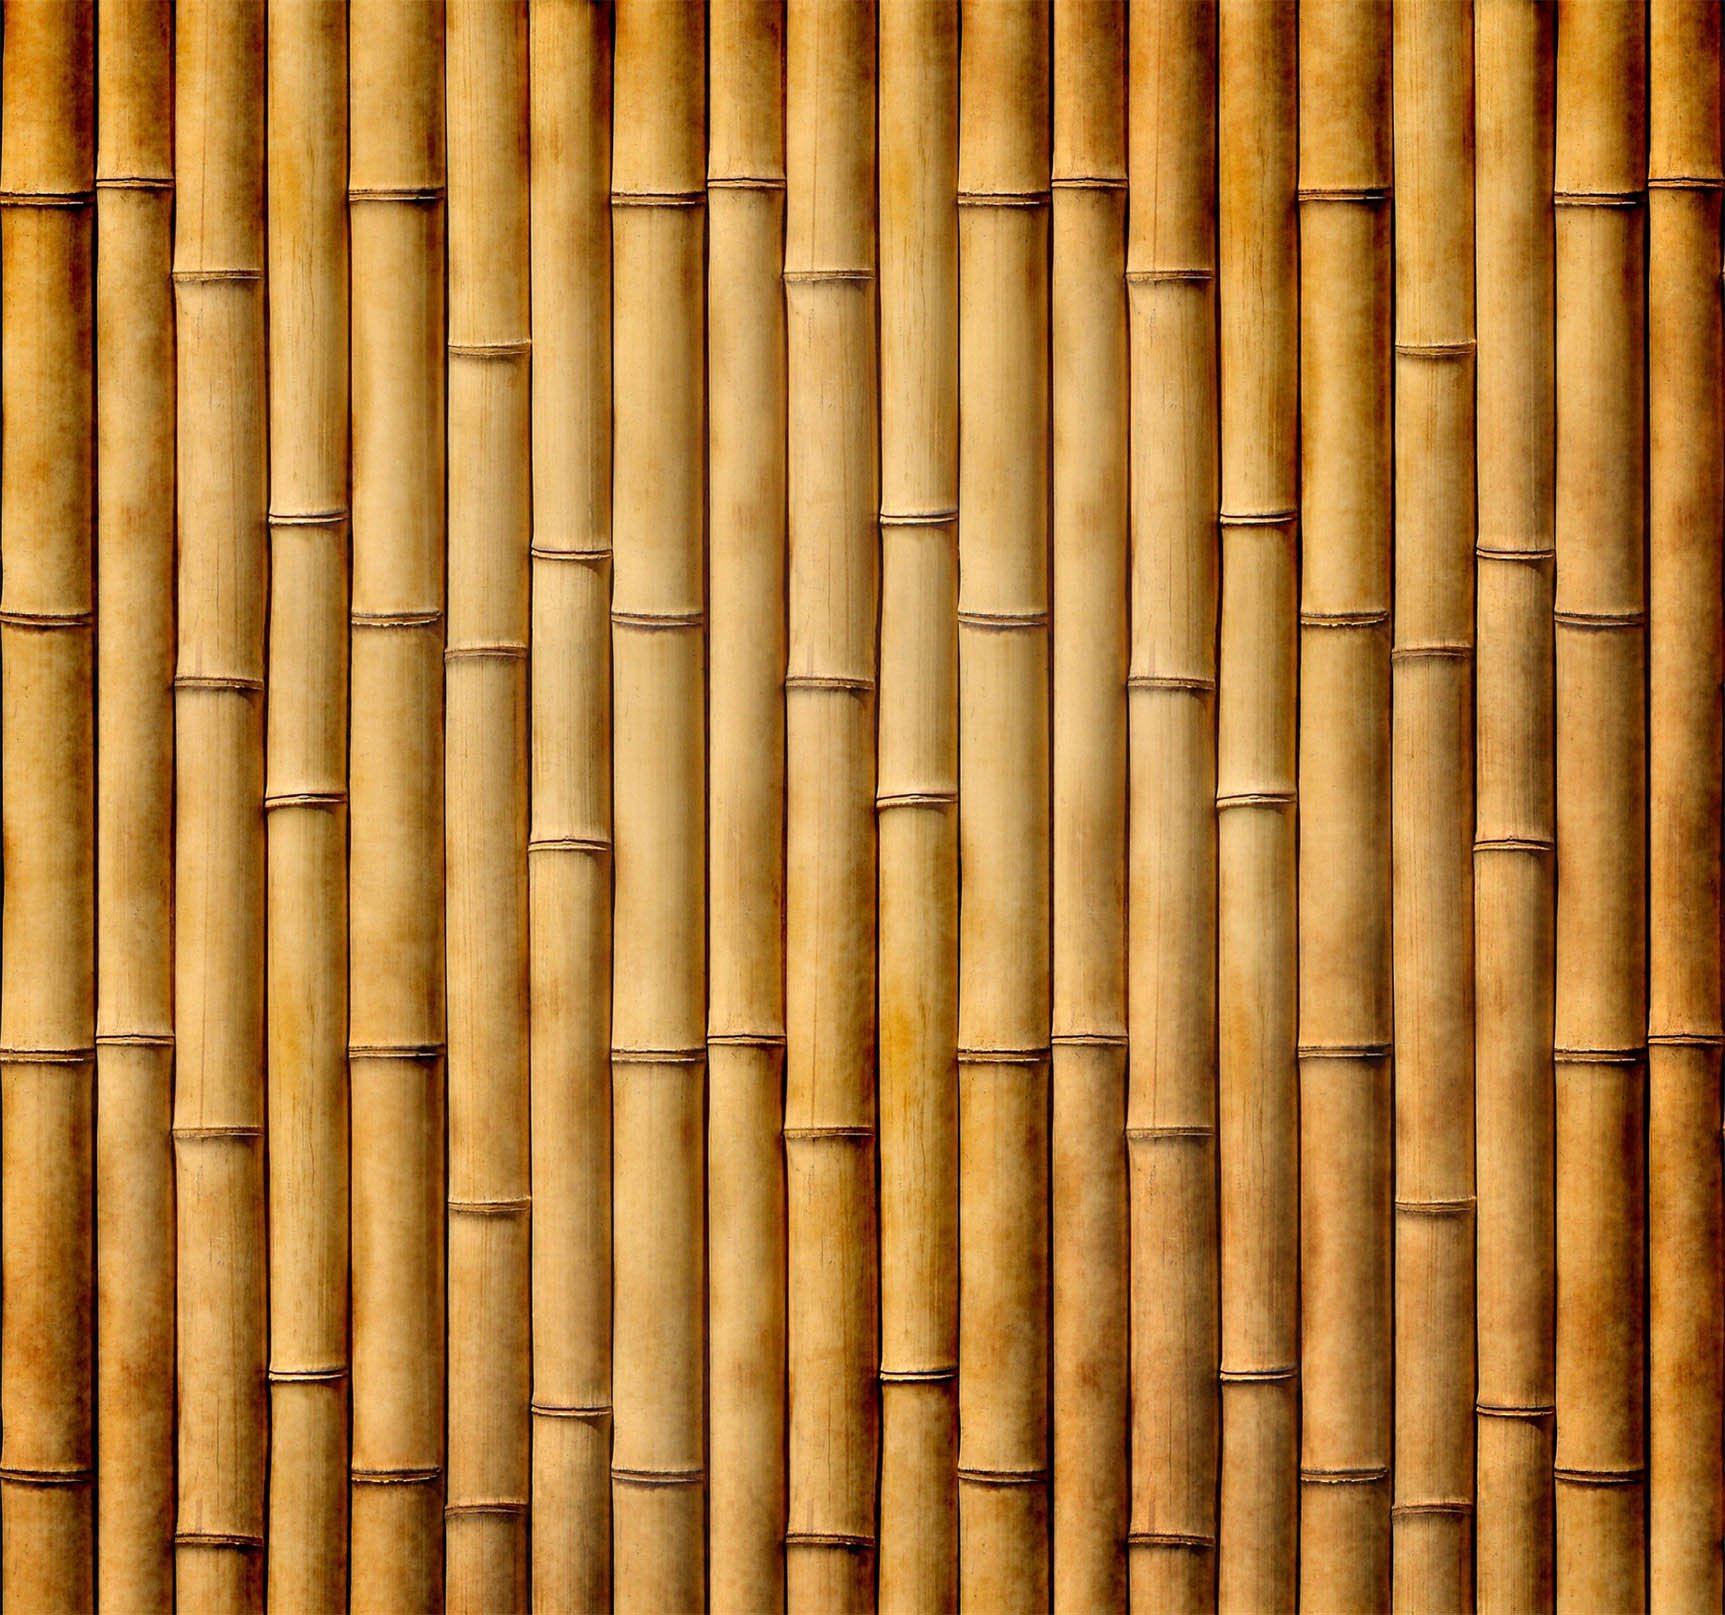 3D Bamboo Poles Kitchen Mat Floor Mural Wallpaper AJ Wallpaper 